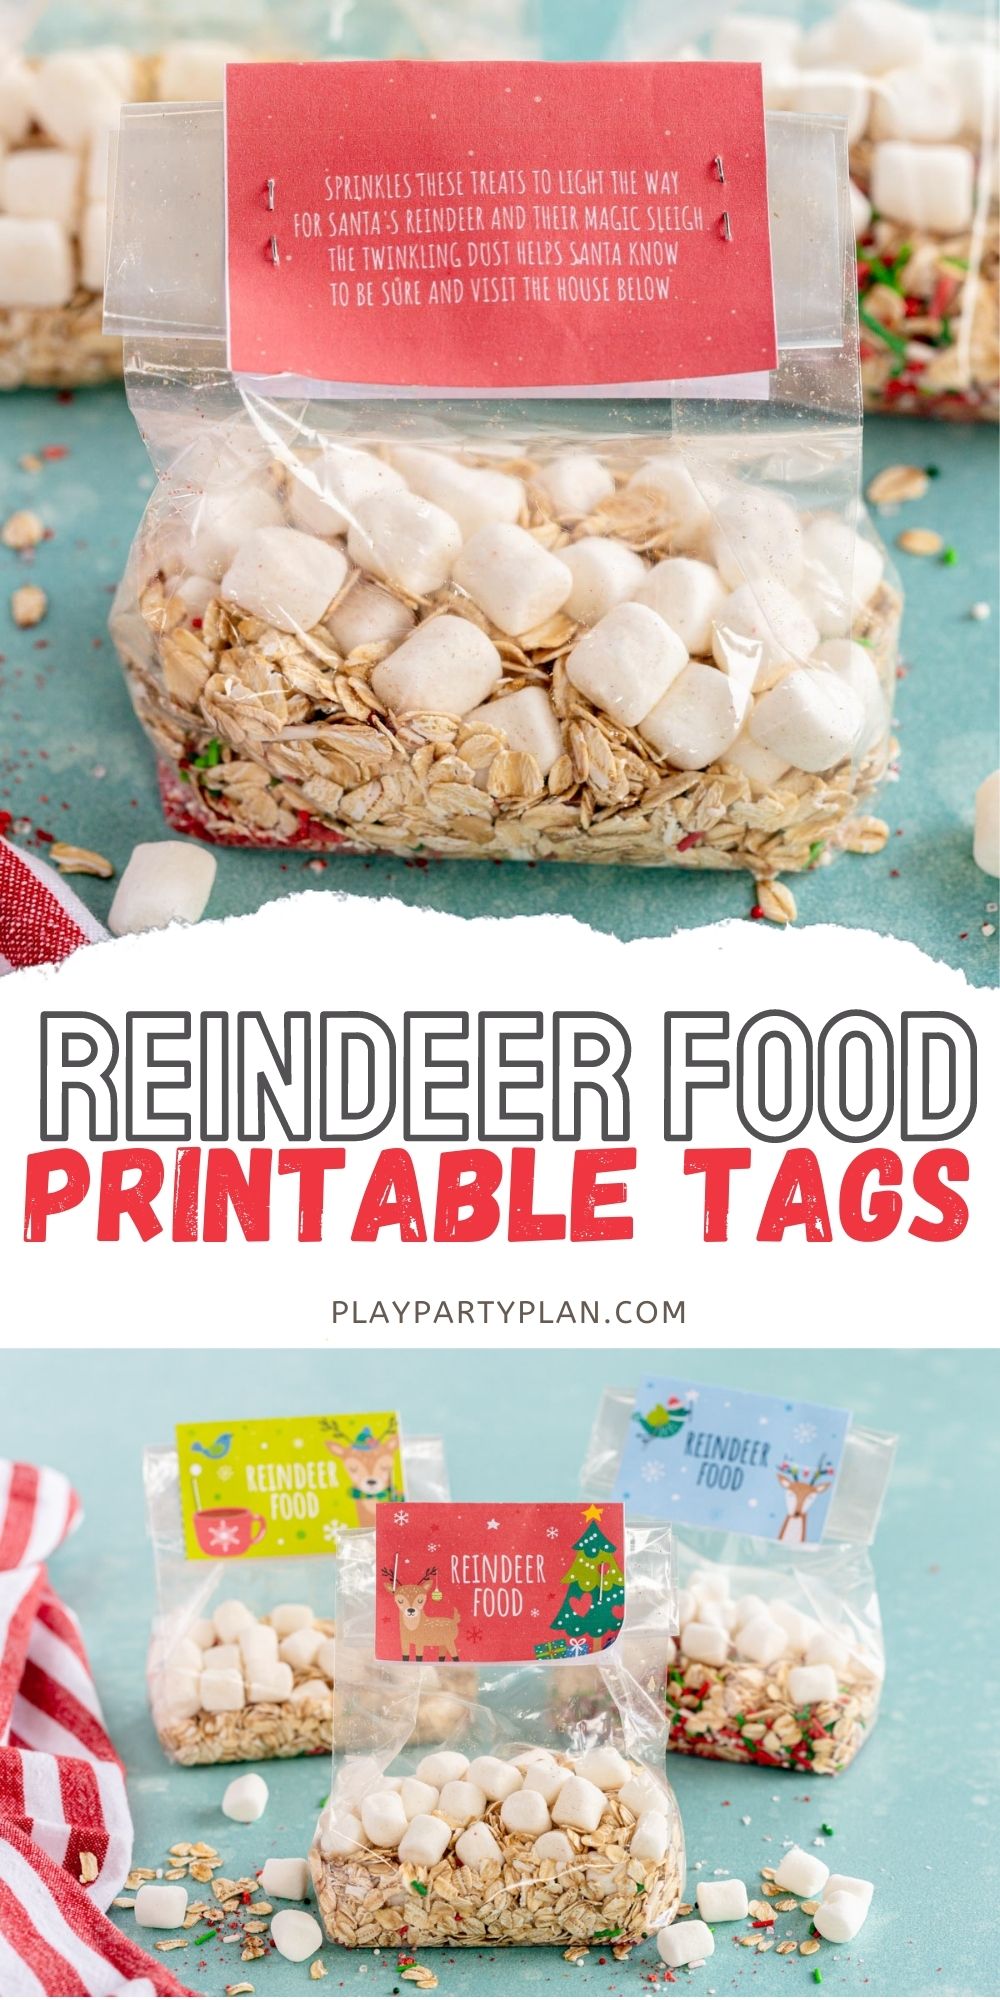 Free Printable Reindeer Food Tags - Play Party Plan